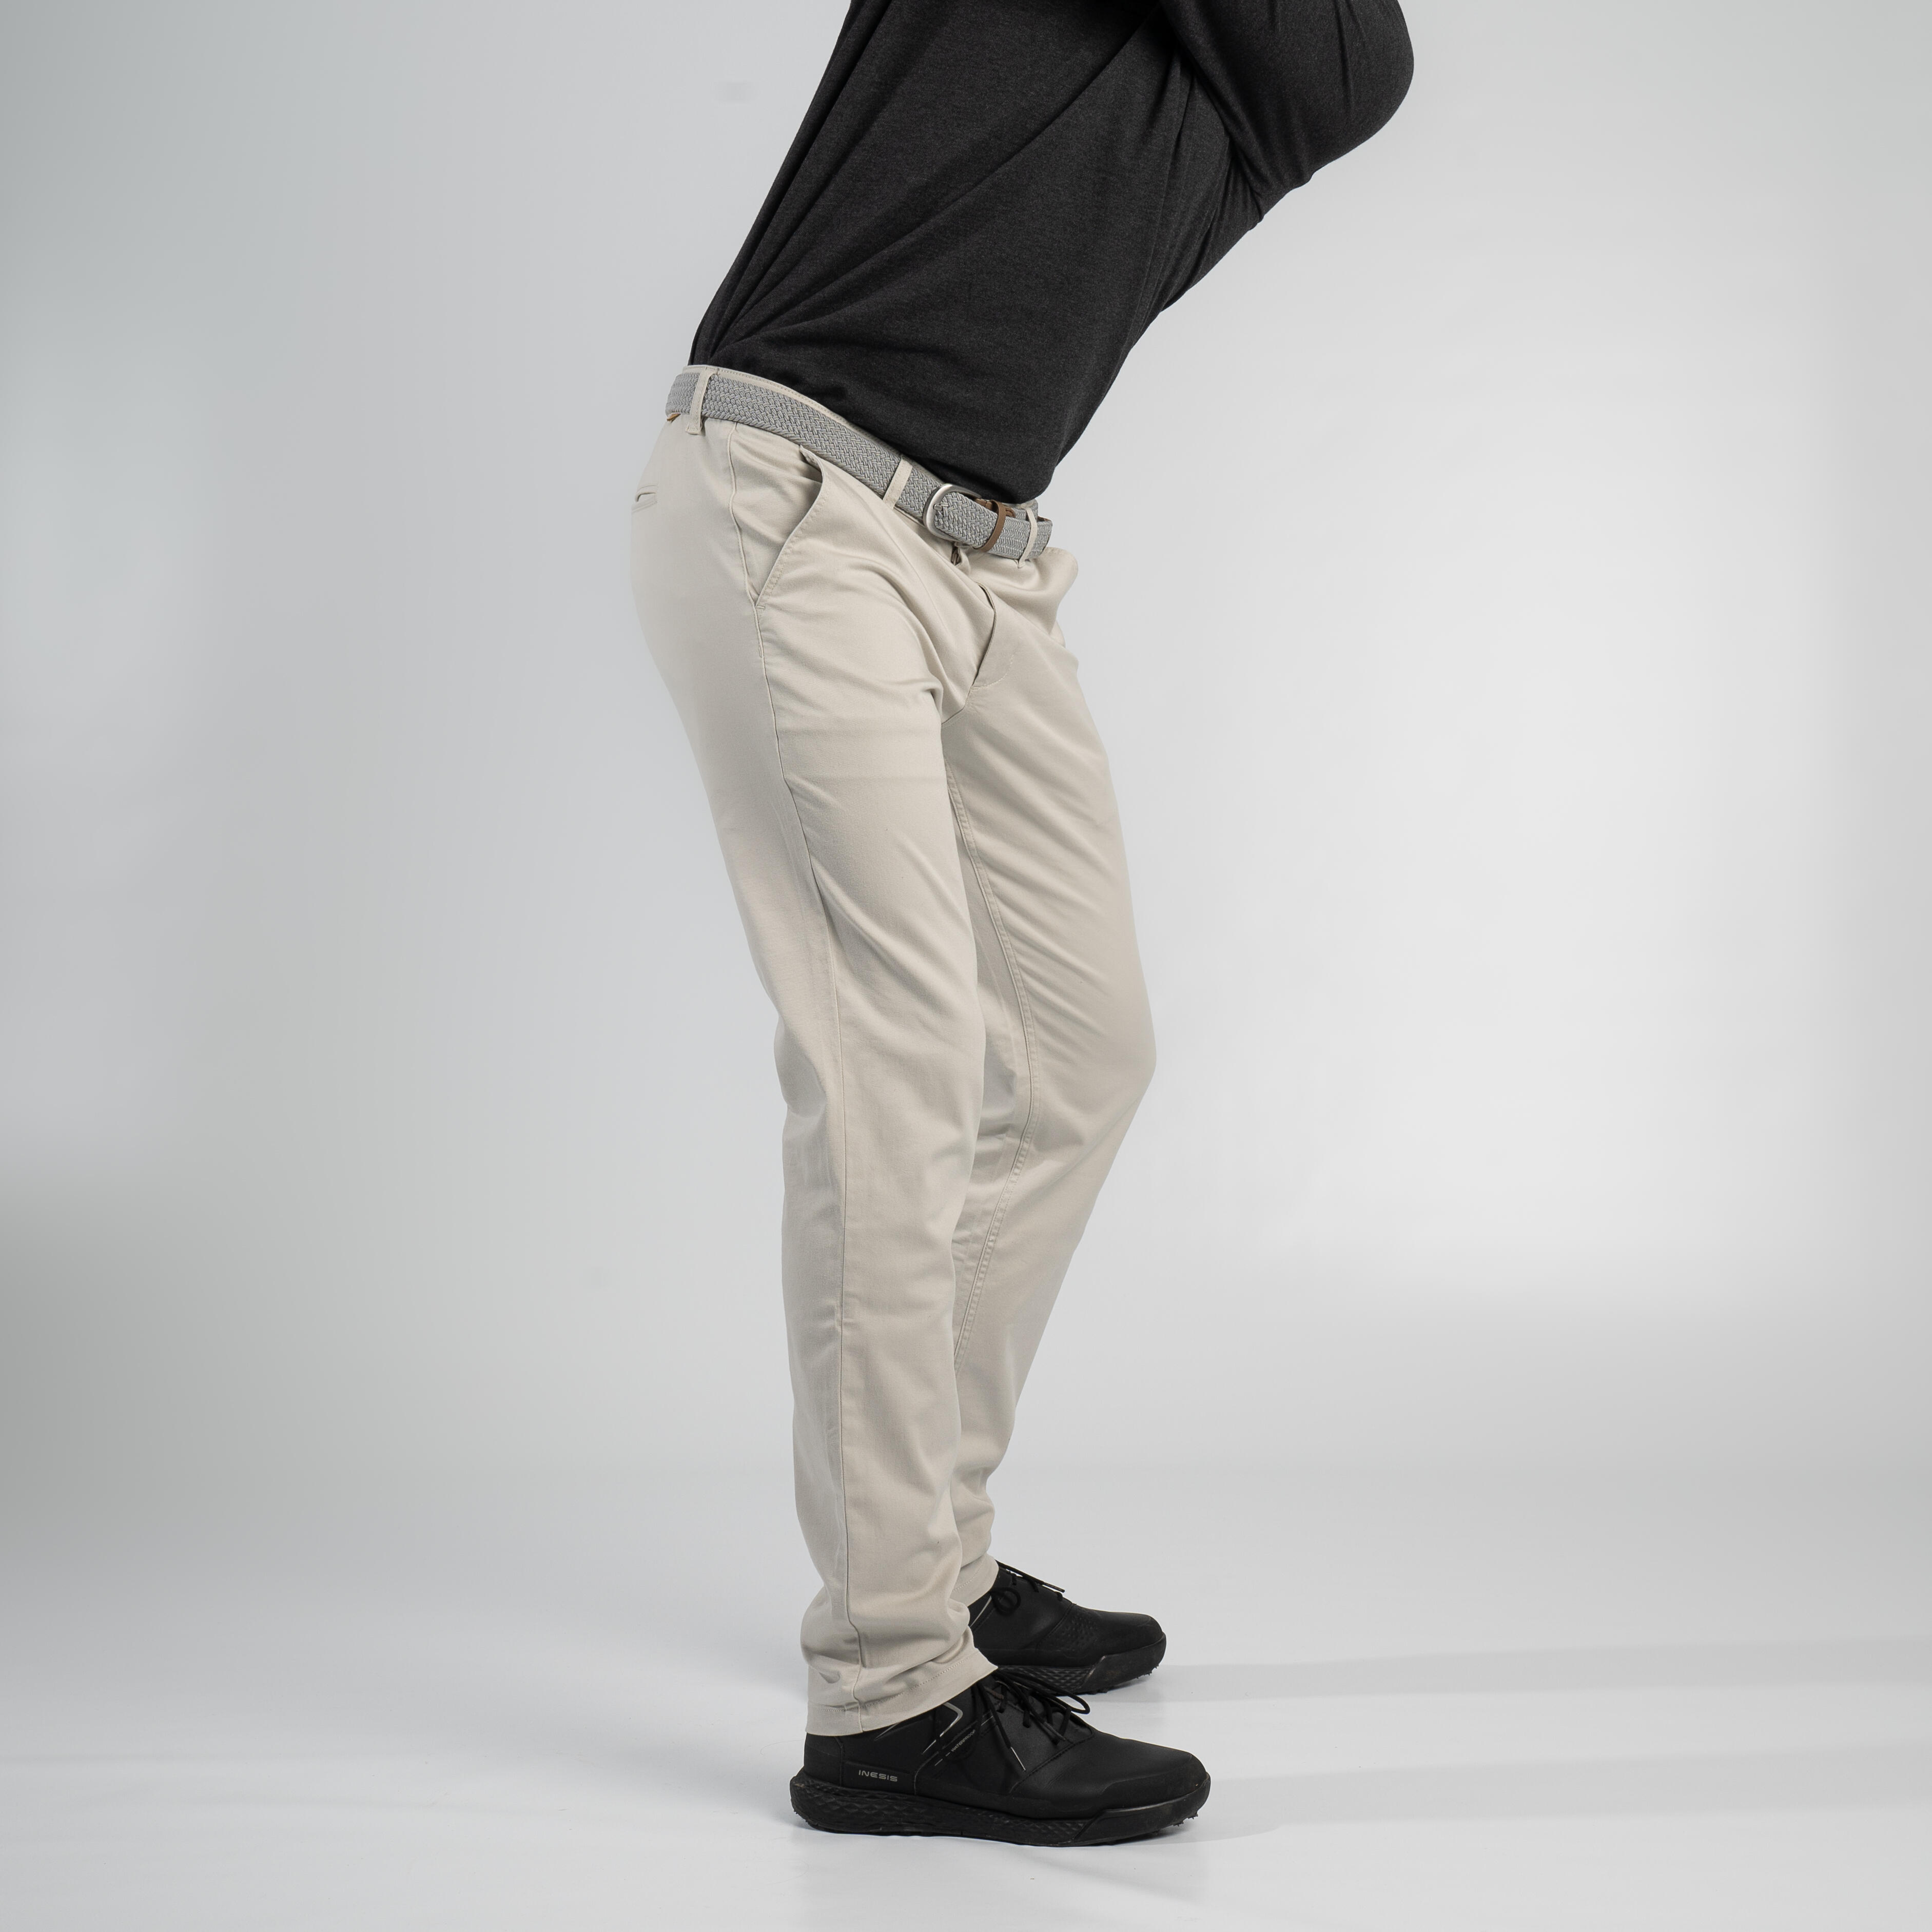 Puma Dealer Tailored Mens Golf Pants  Slate Sky  Clubtech Golf